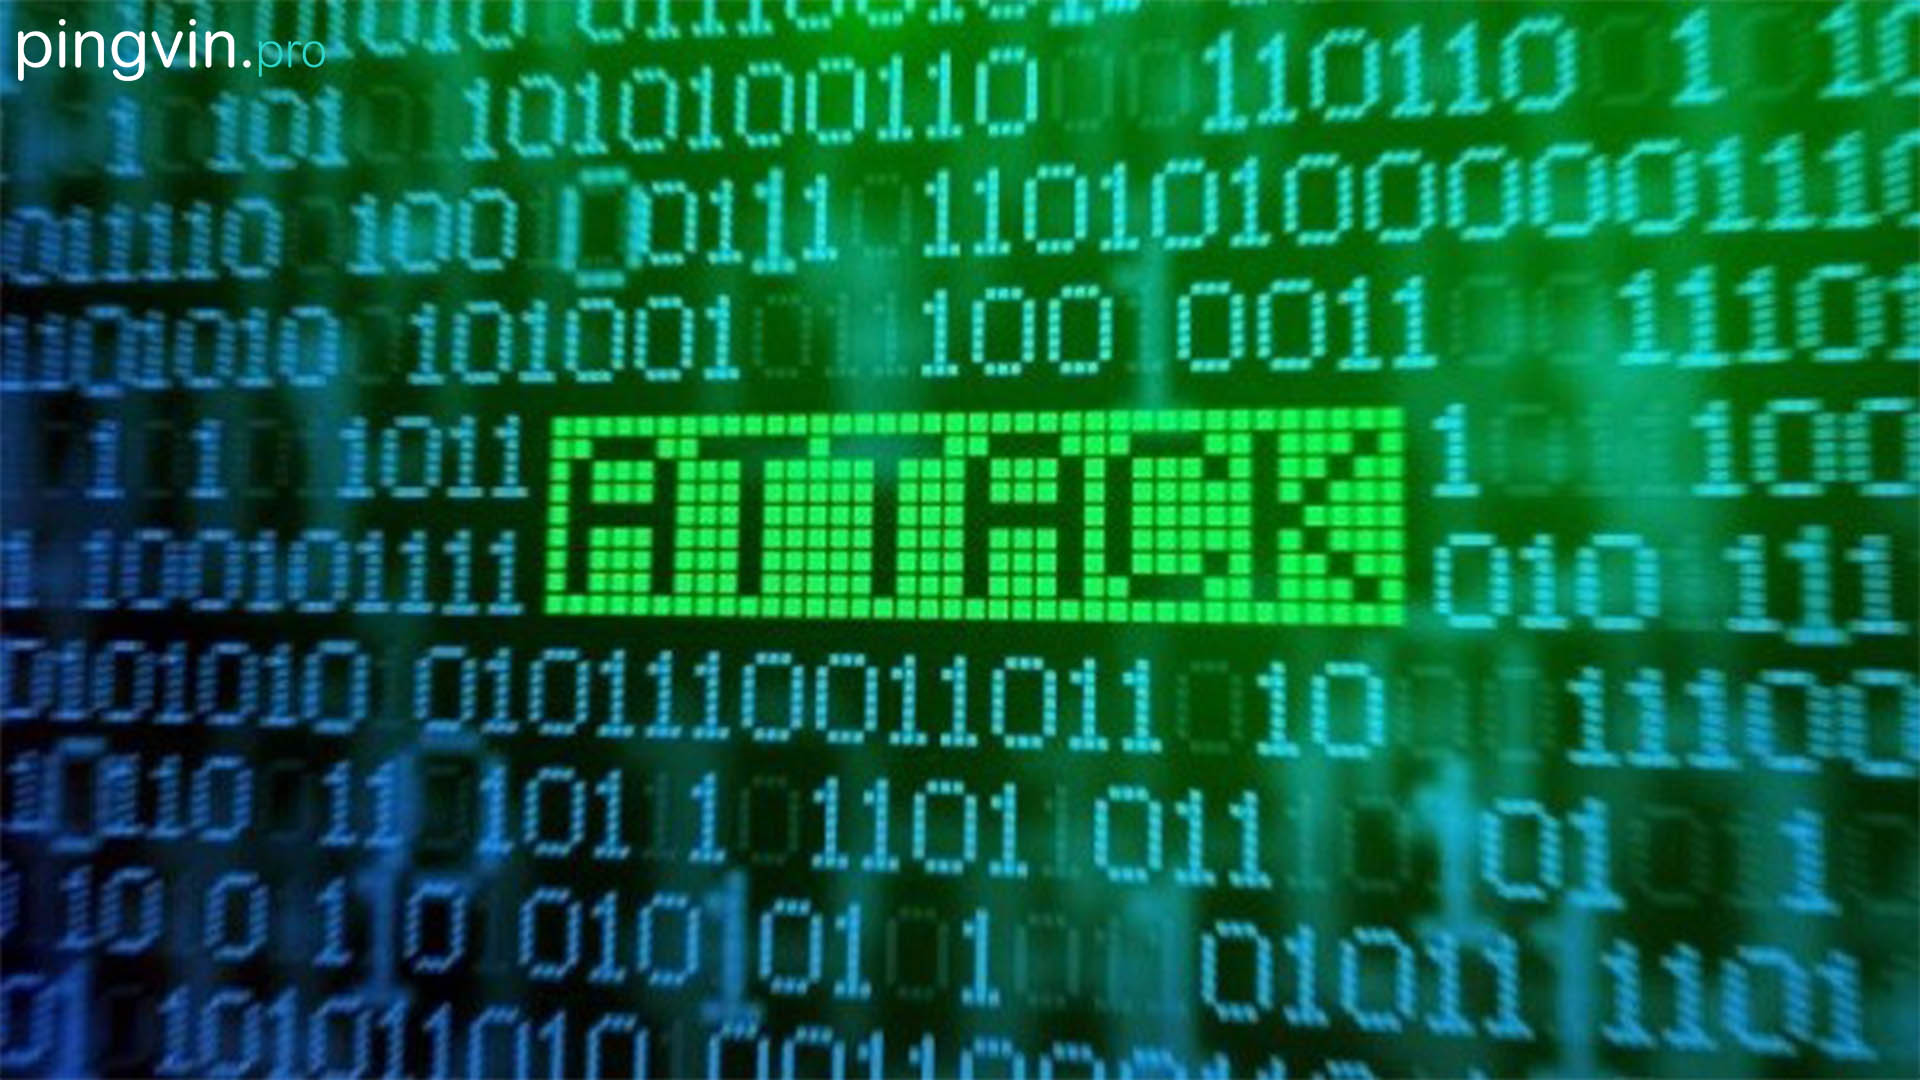 ПриватБанк та Ощадбанк кібератак / фішингова схема / фішингових / Державні інформаційні ресурси потерпають від DDoS-атак, фішингу і шкідливого ПЗ